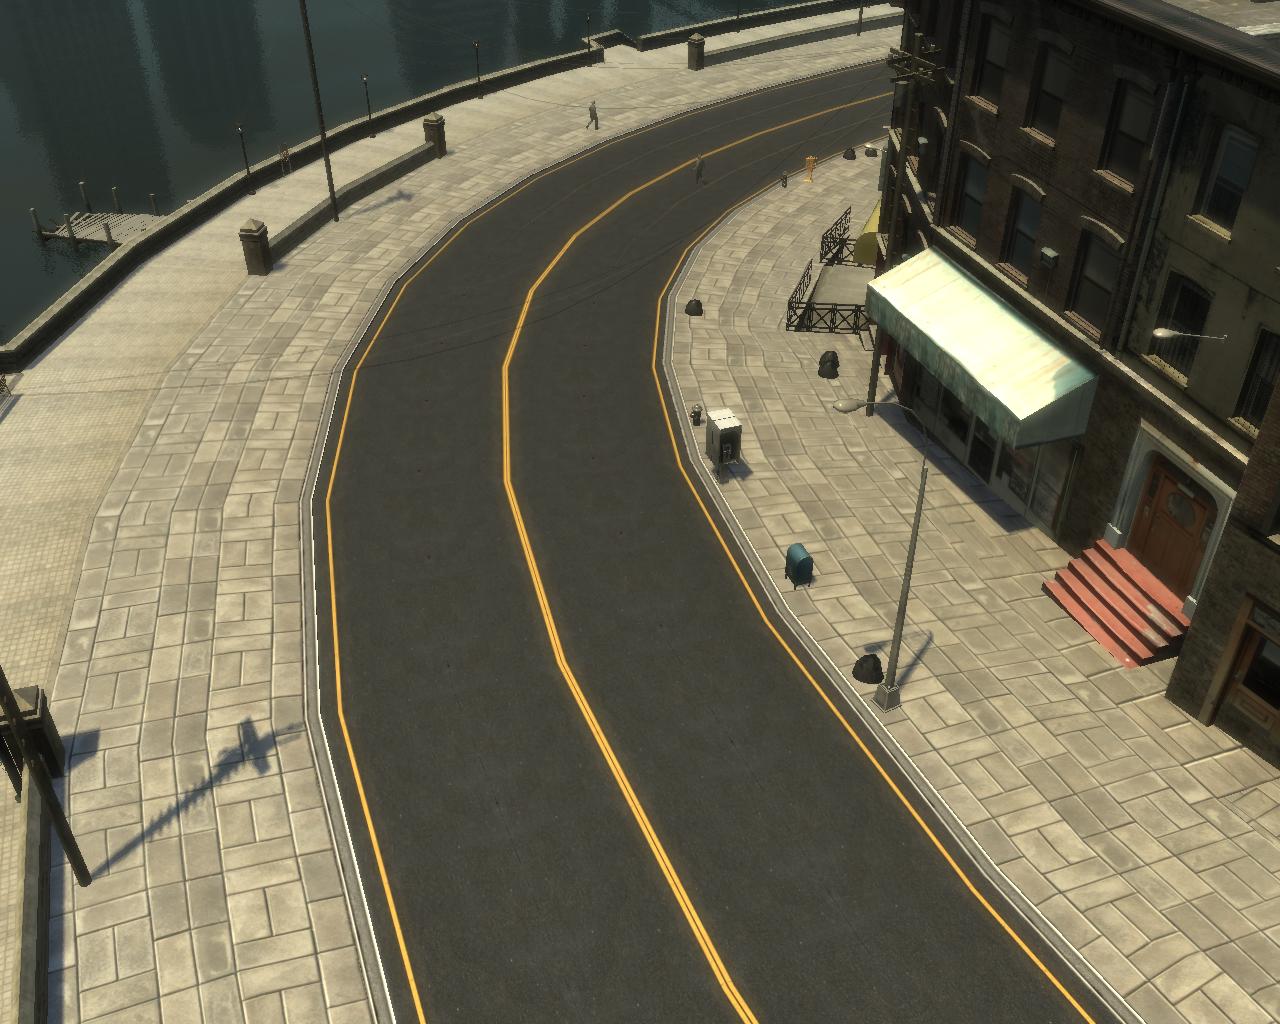 PS2 Road & Pavement Textures Mod - GTA III, VC & SA - GTAForums